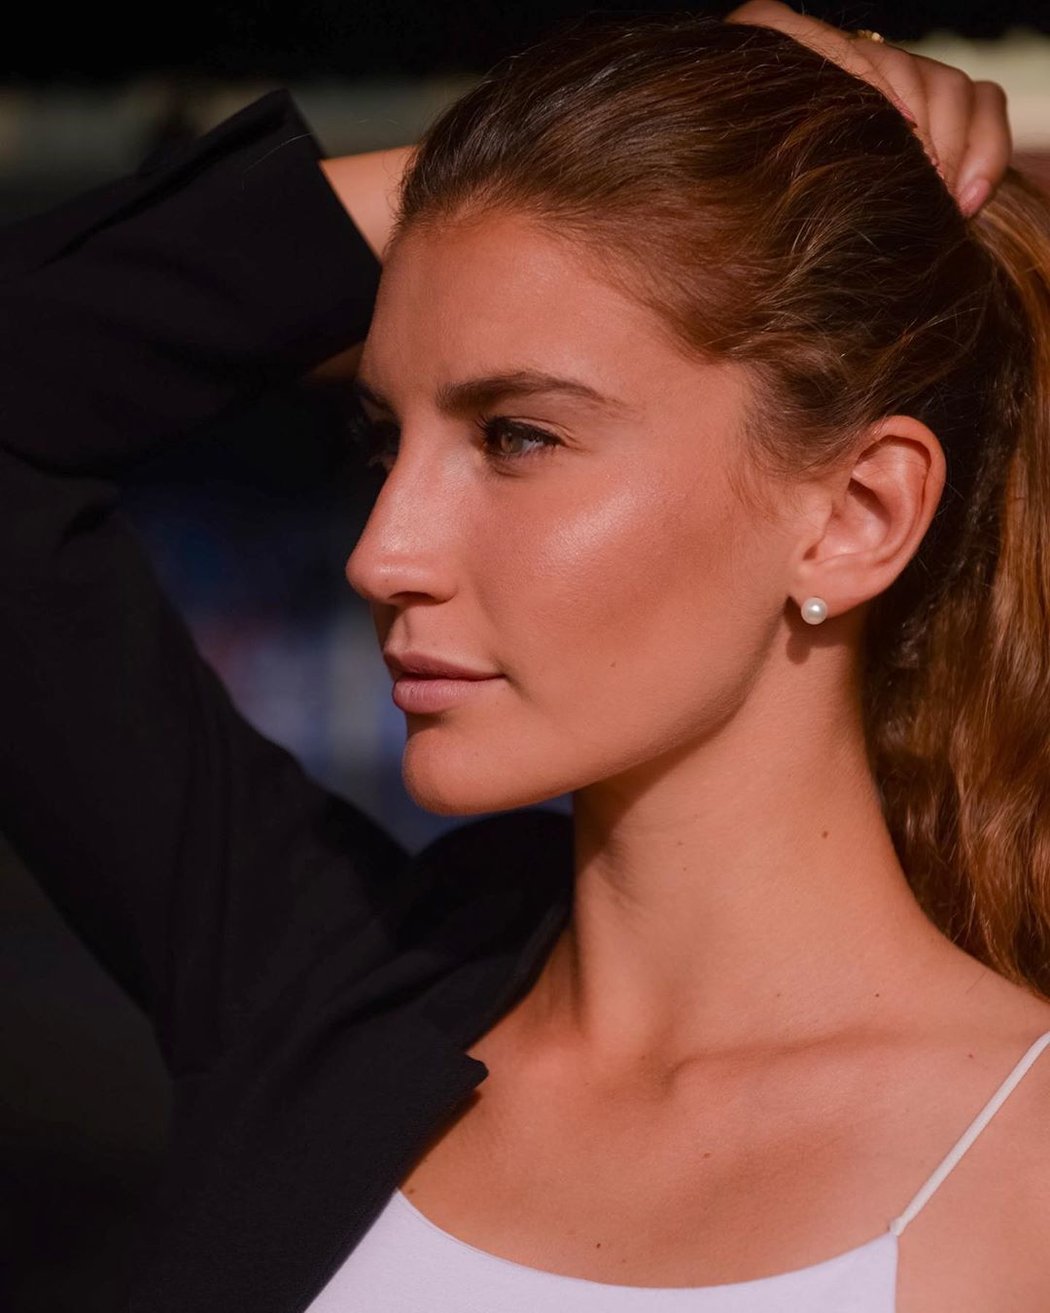 Tenisová kráska a účastnice Miss Italia 2019 Susanna Giovanardiová by to jednou ráda dotáhla až do hlavní soutěže grandslamu